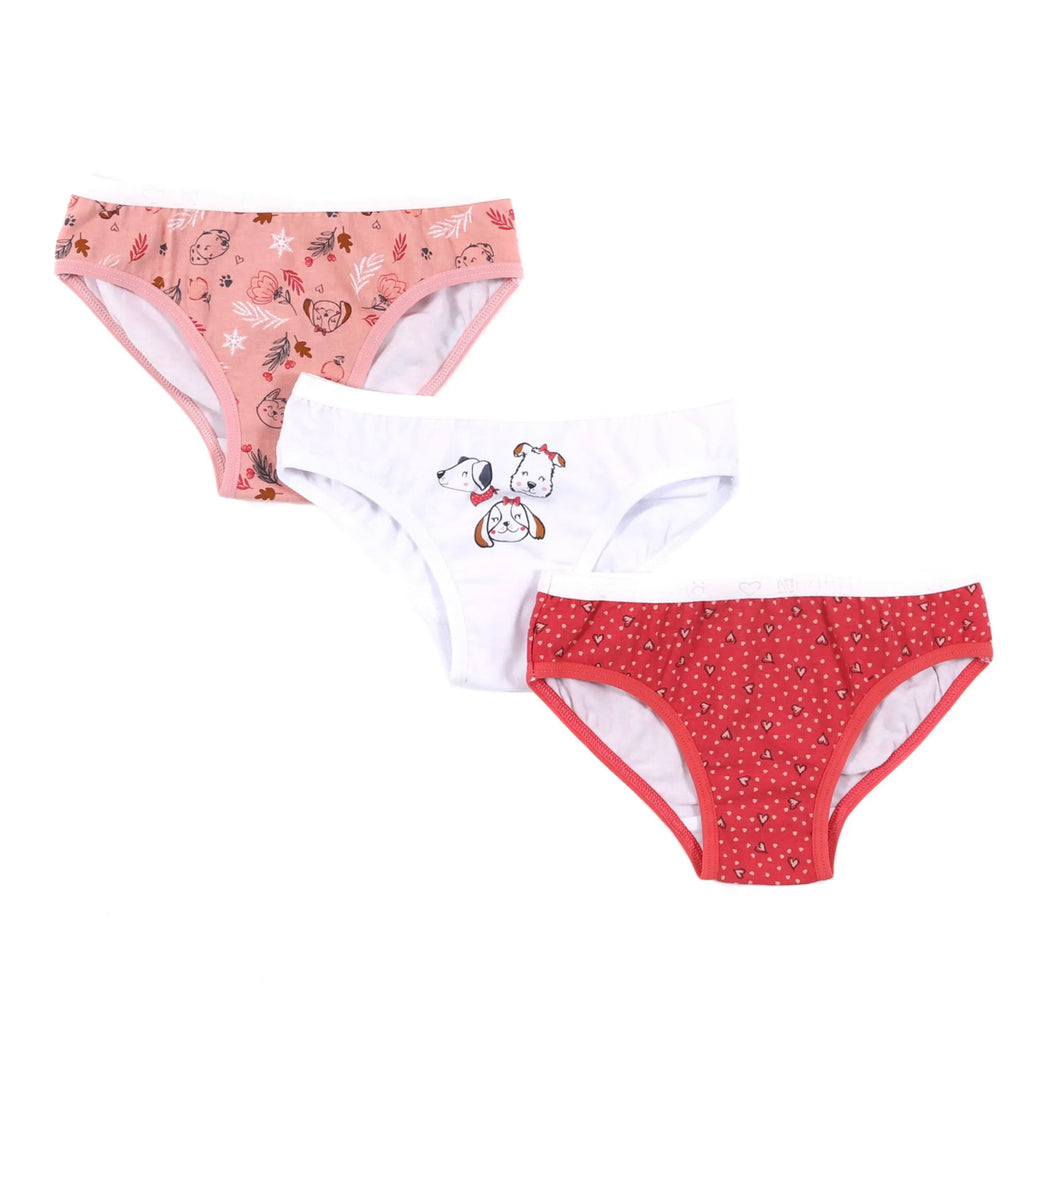 Nano Girls 3 Pack Underwear (Pink/Puppies): Size 2/3 to 10/12